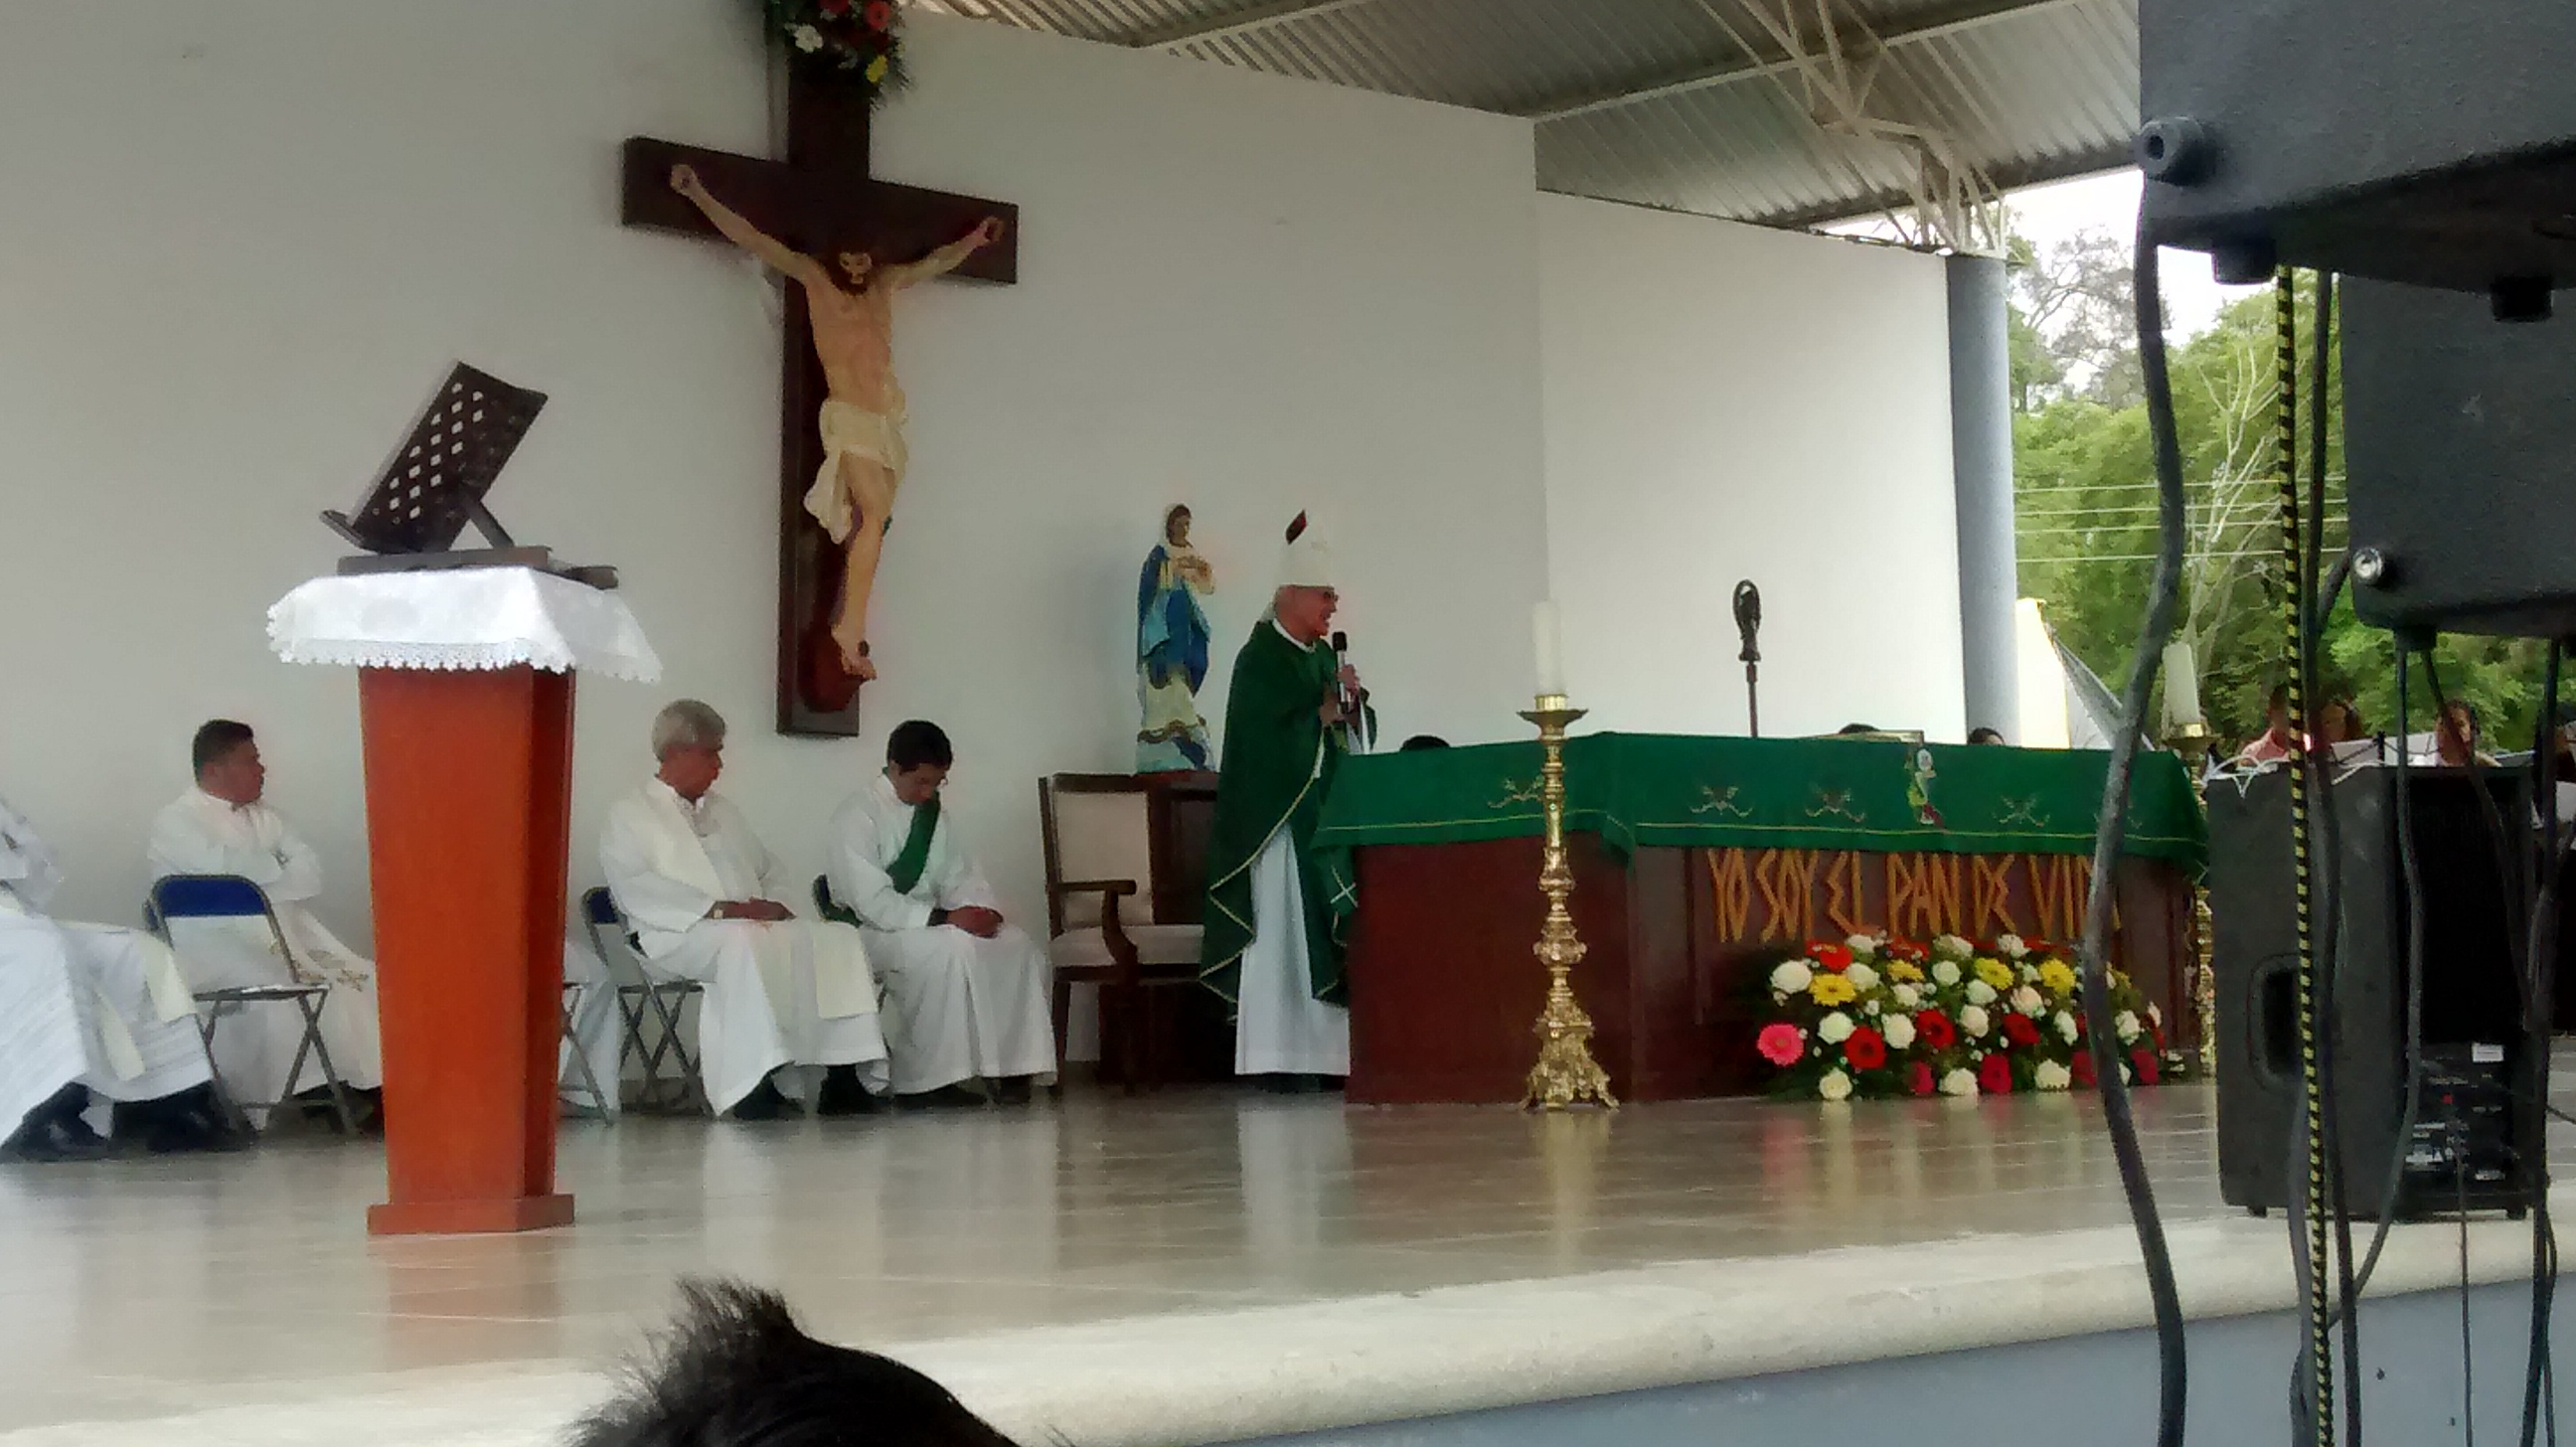 Descartan extorsiones contra sacerdotes en la región de Tehuacán